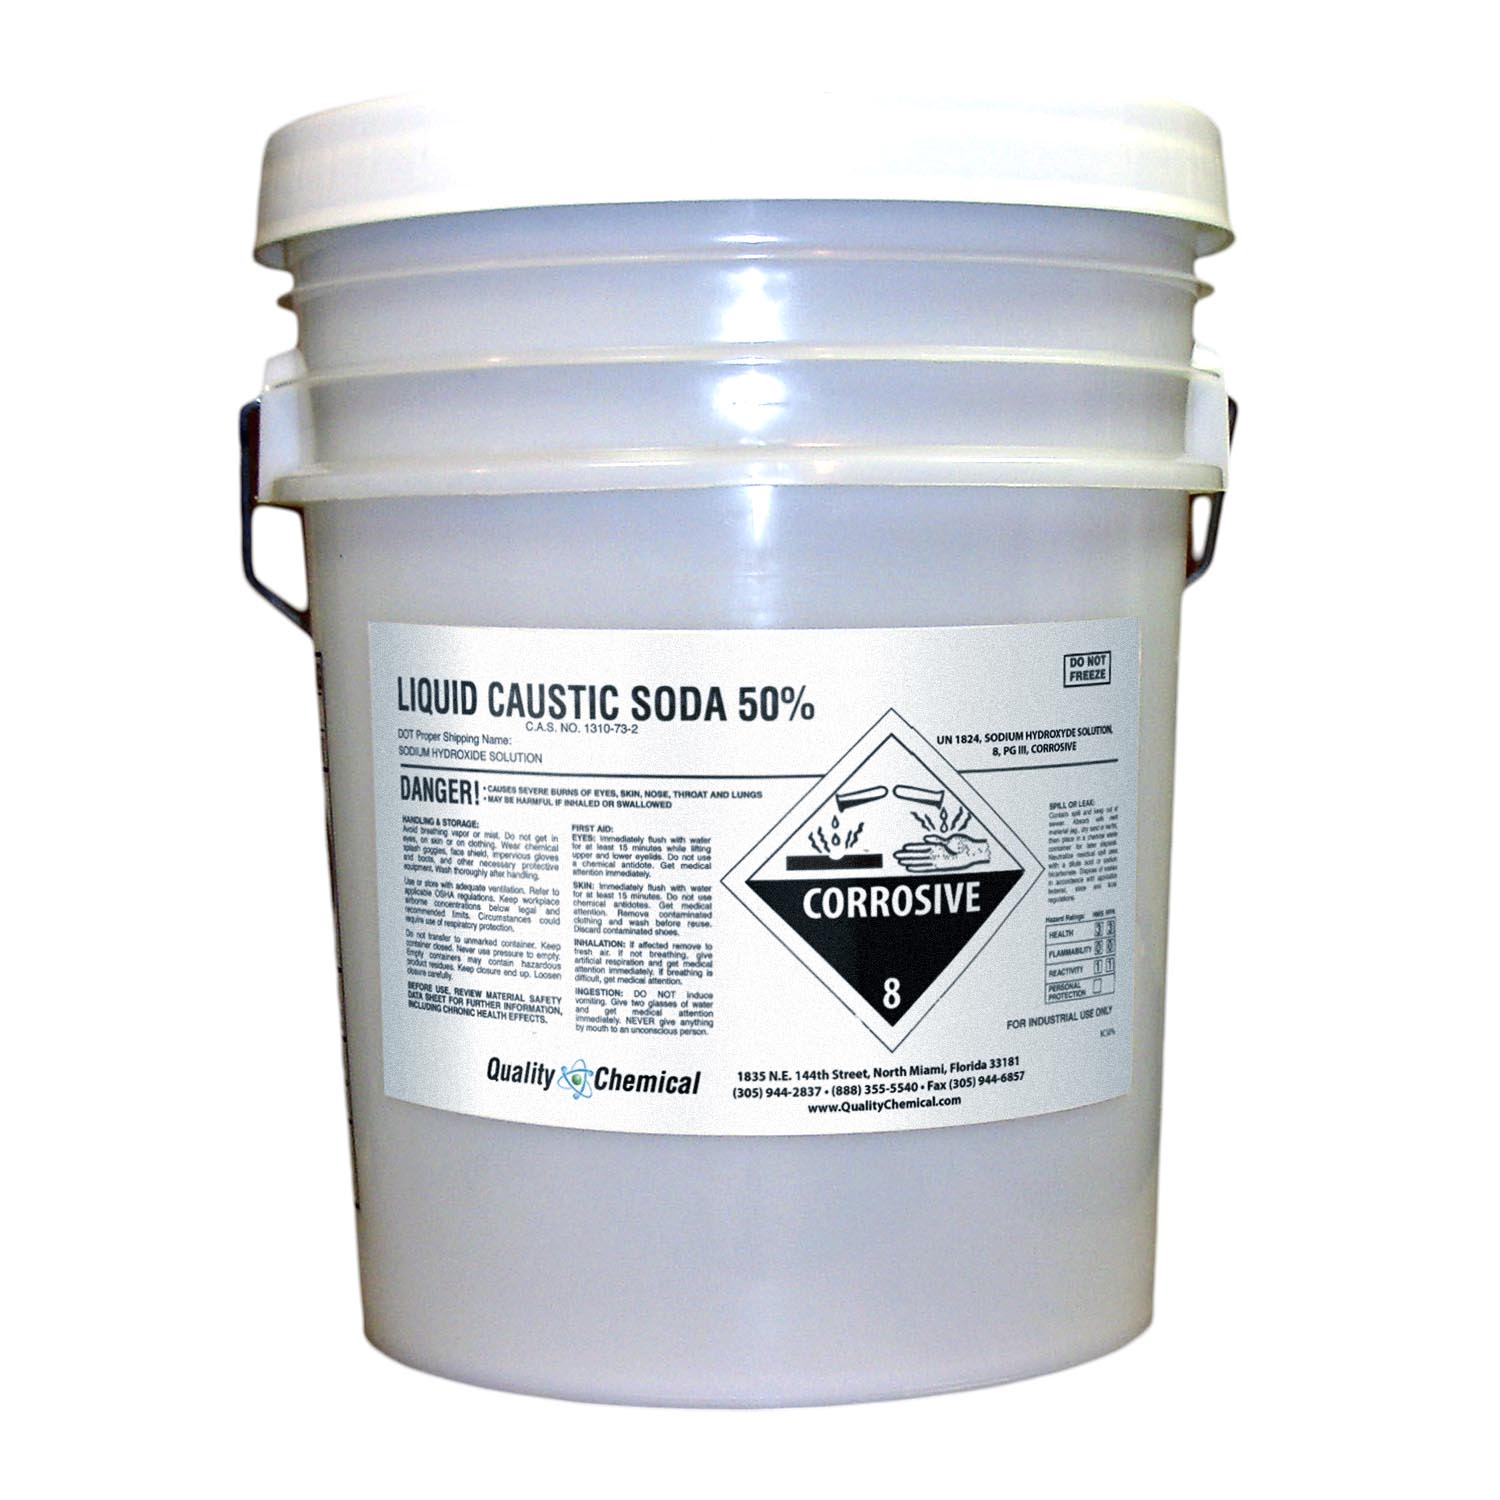 Quality Chemical Company - Sodium Hydroxide Liquid (Caustic Soda